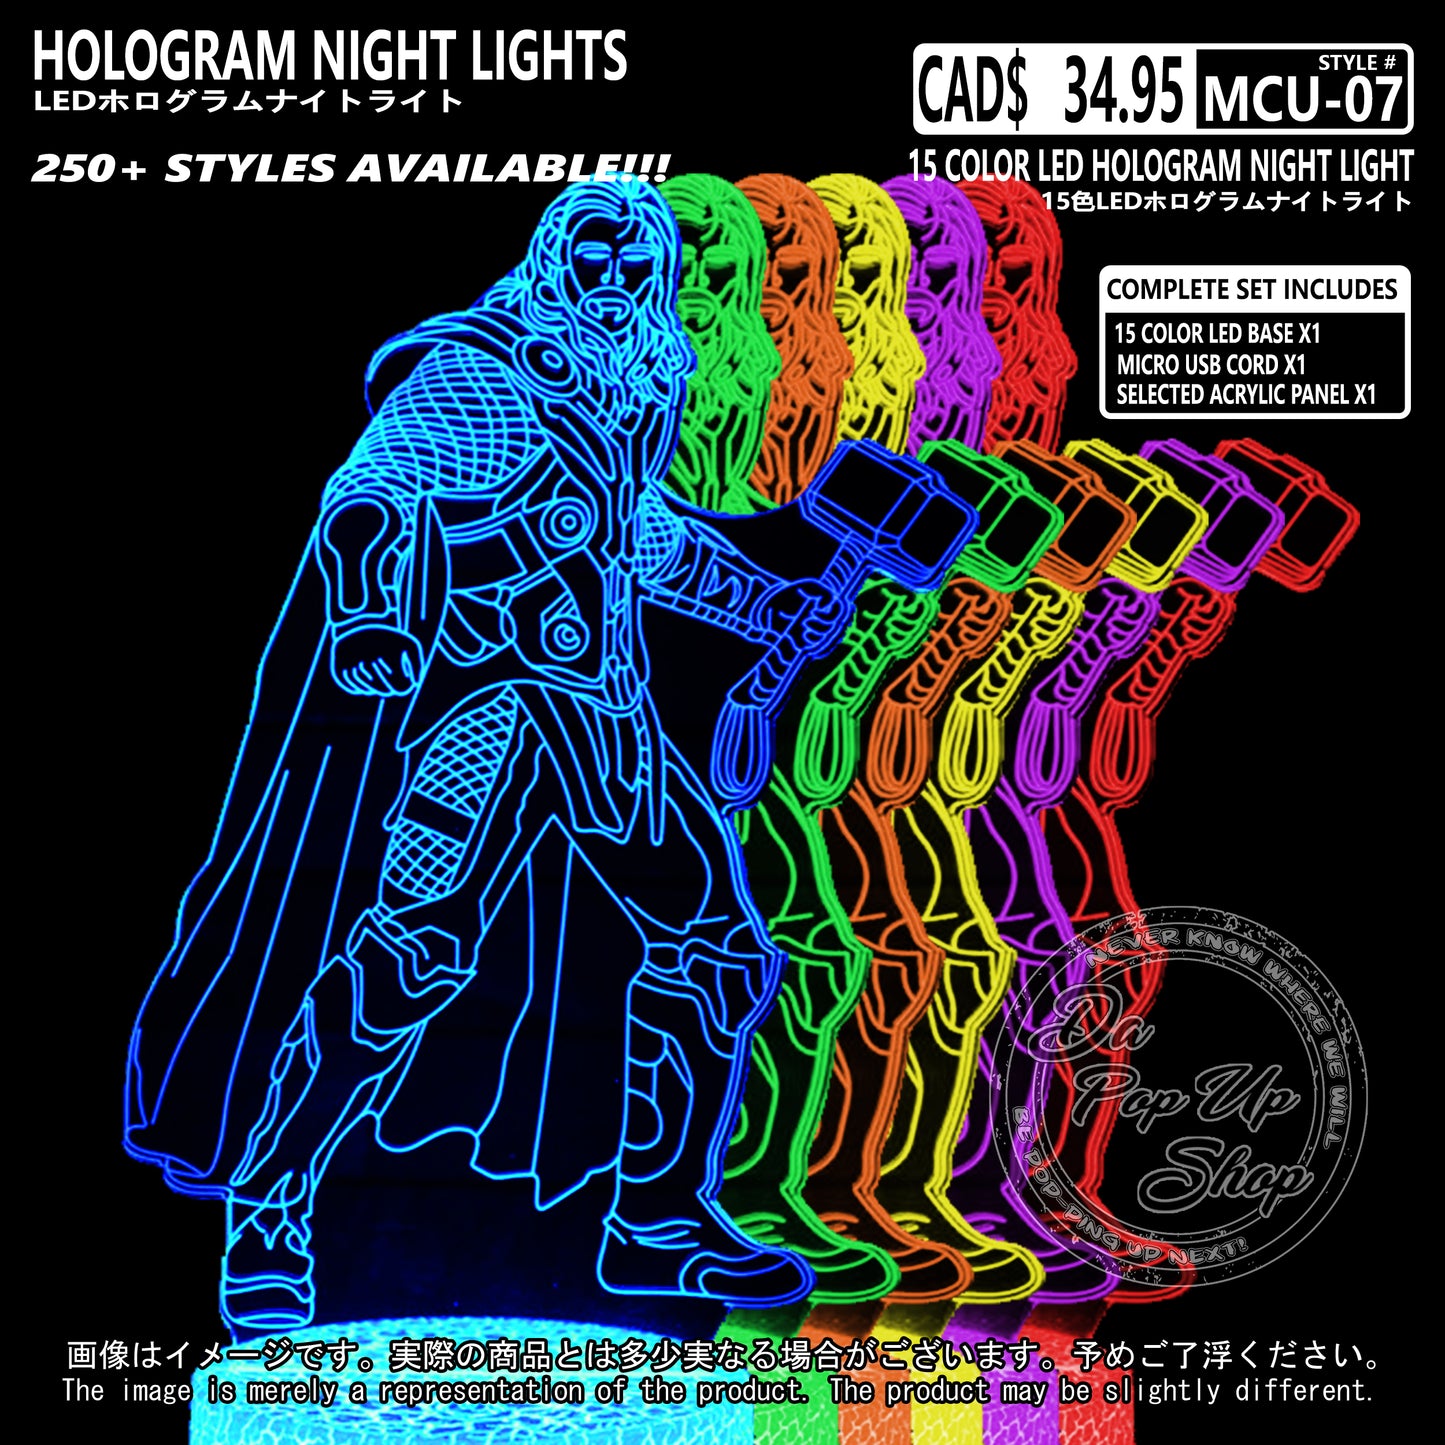 (MCU-07) MCU Marvel Cinematic Universal Hologram LED Night Light